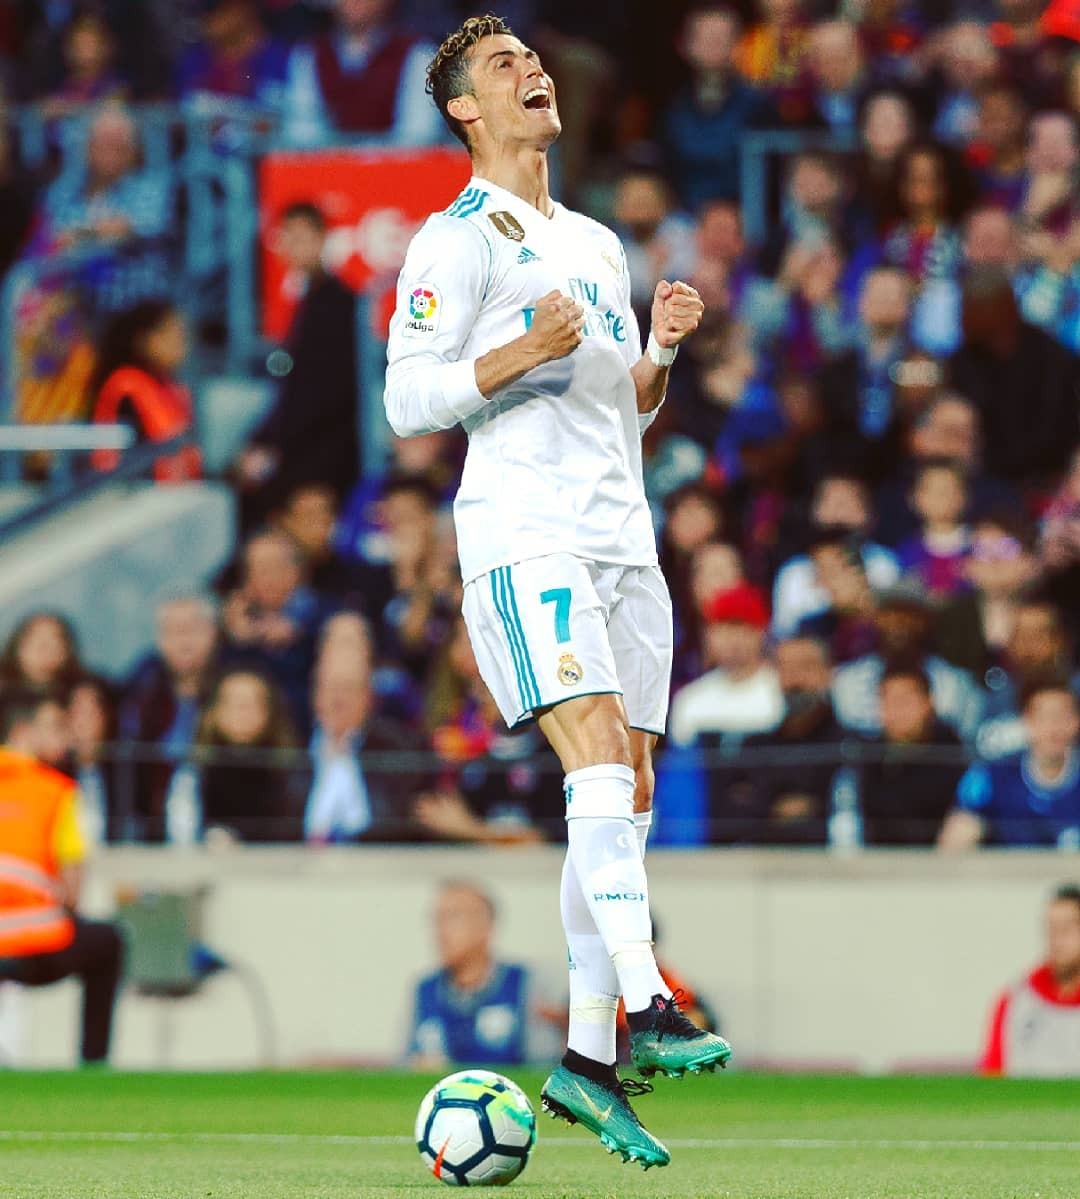 All about Cristiano Ronaldo dos Santos Aveiro — Calma! Calma! (twice today  ♥) FC Barcelons vs.